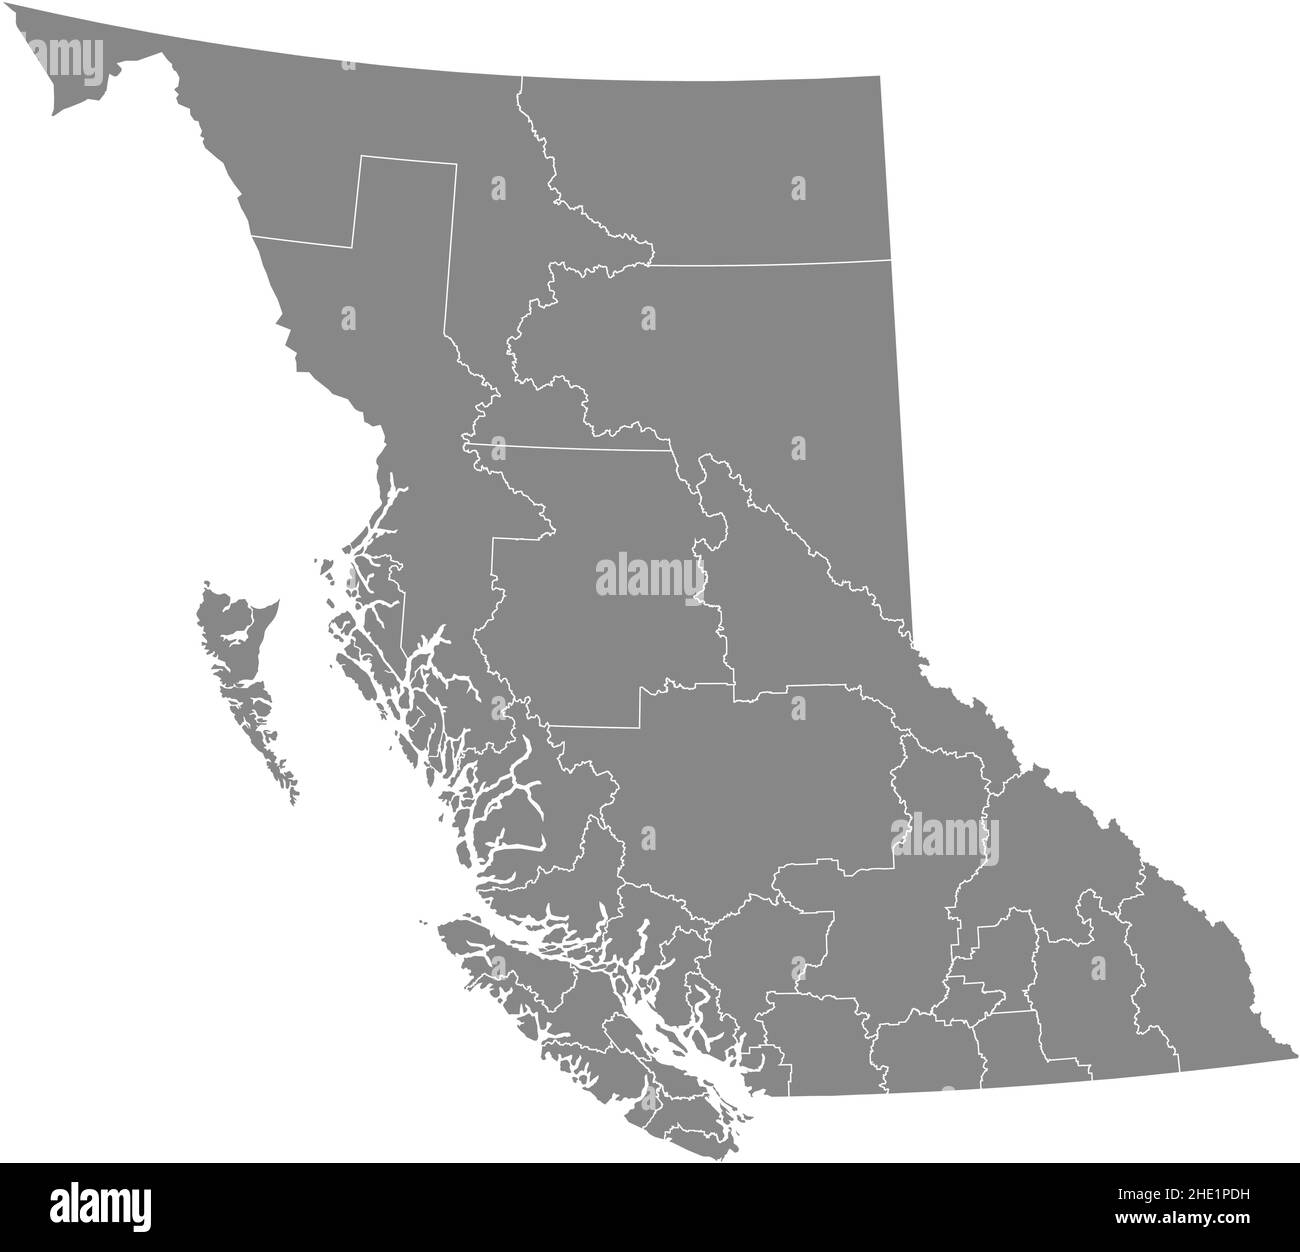 Carte administrative vectorielle vierge et plate grise de la province canadienne de LA COLOMBIE-BRITANNIQUE, CANADA, avec lignes de bordure blanches de ses districts régionaux Illustration de Vecteur